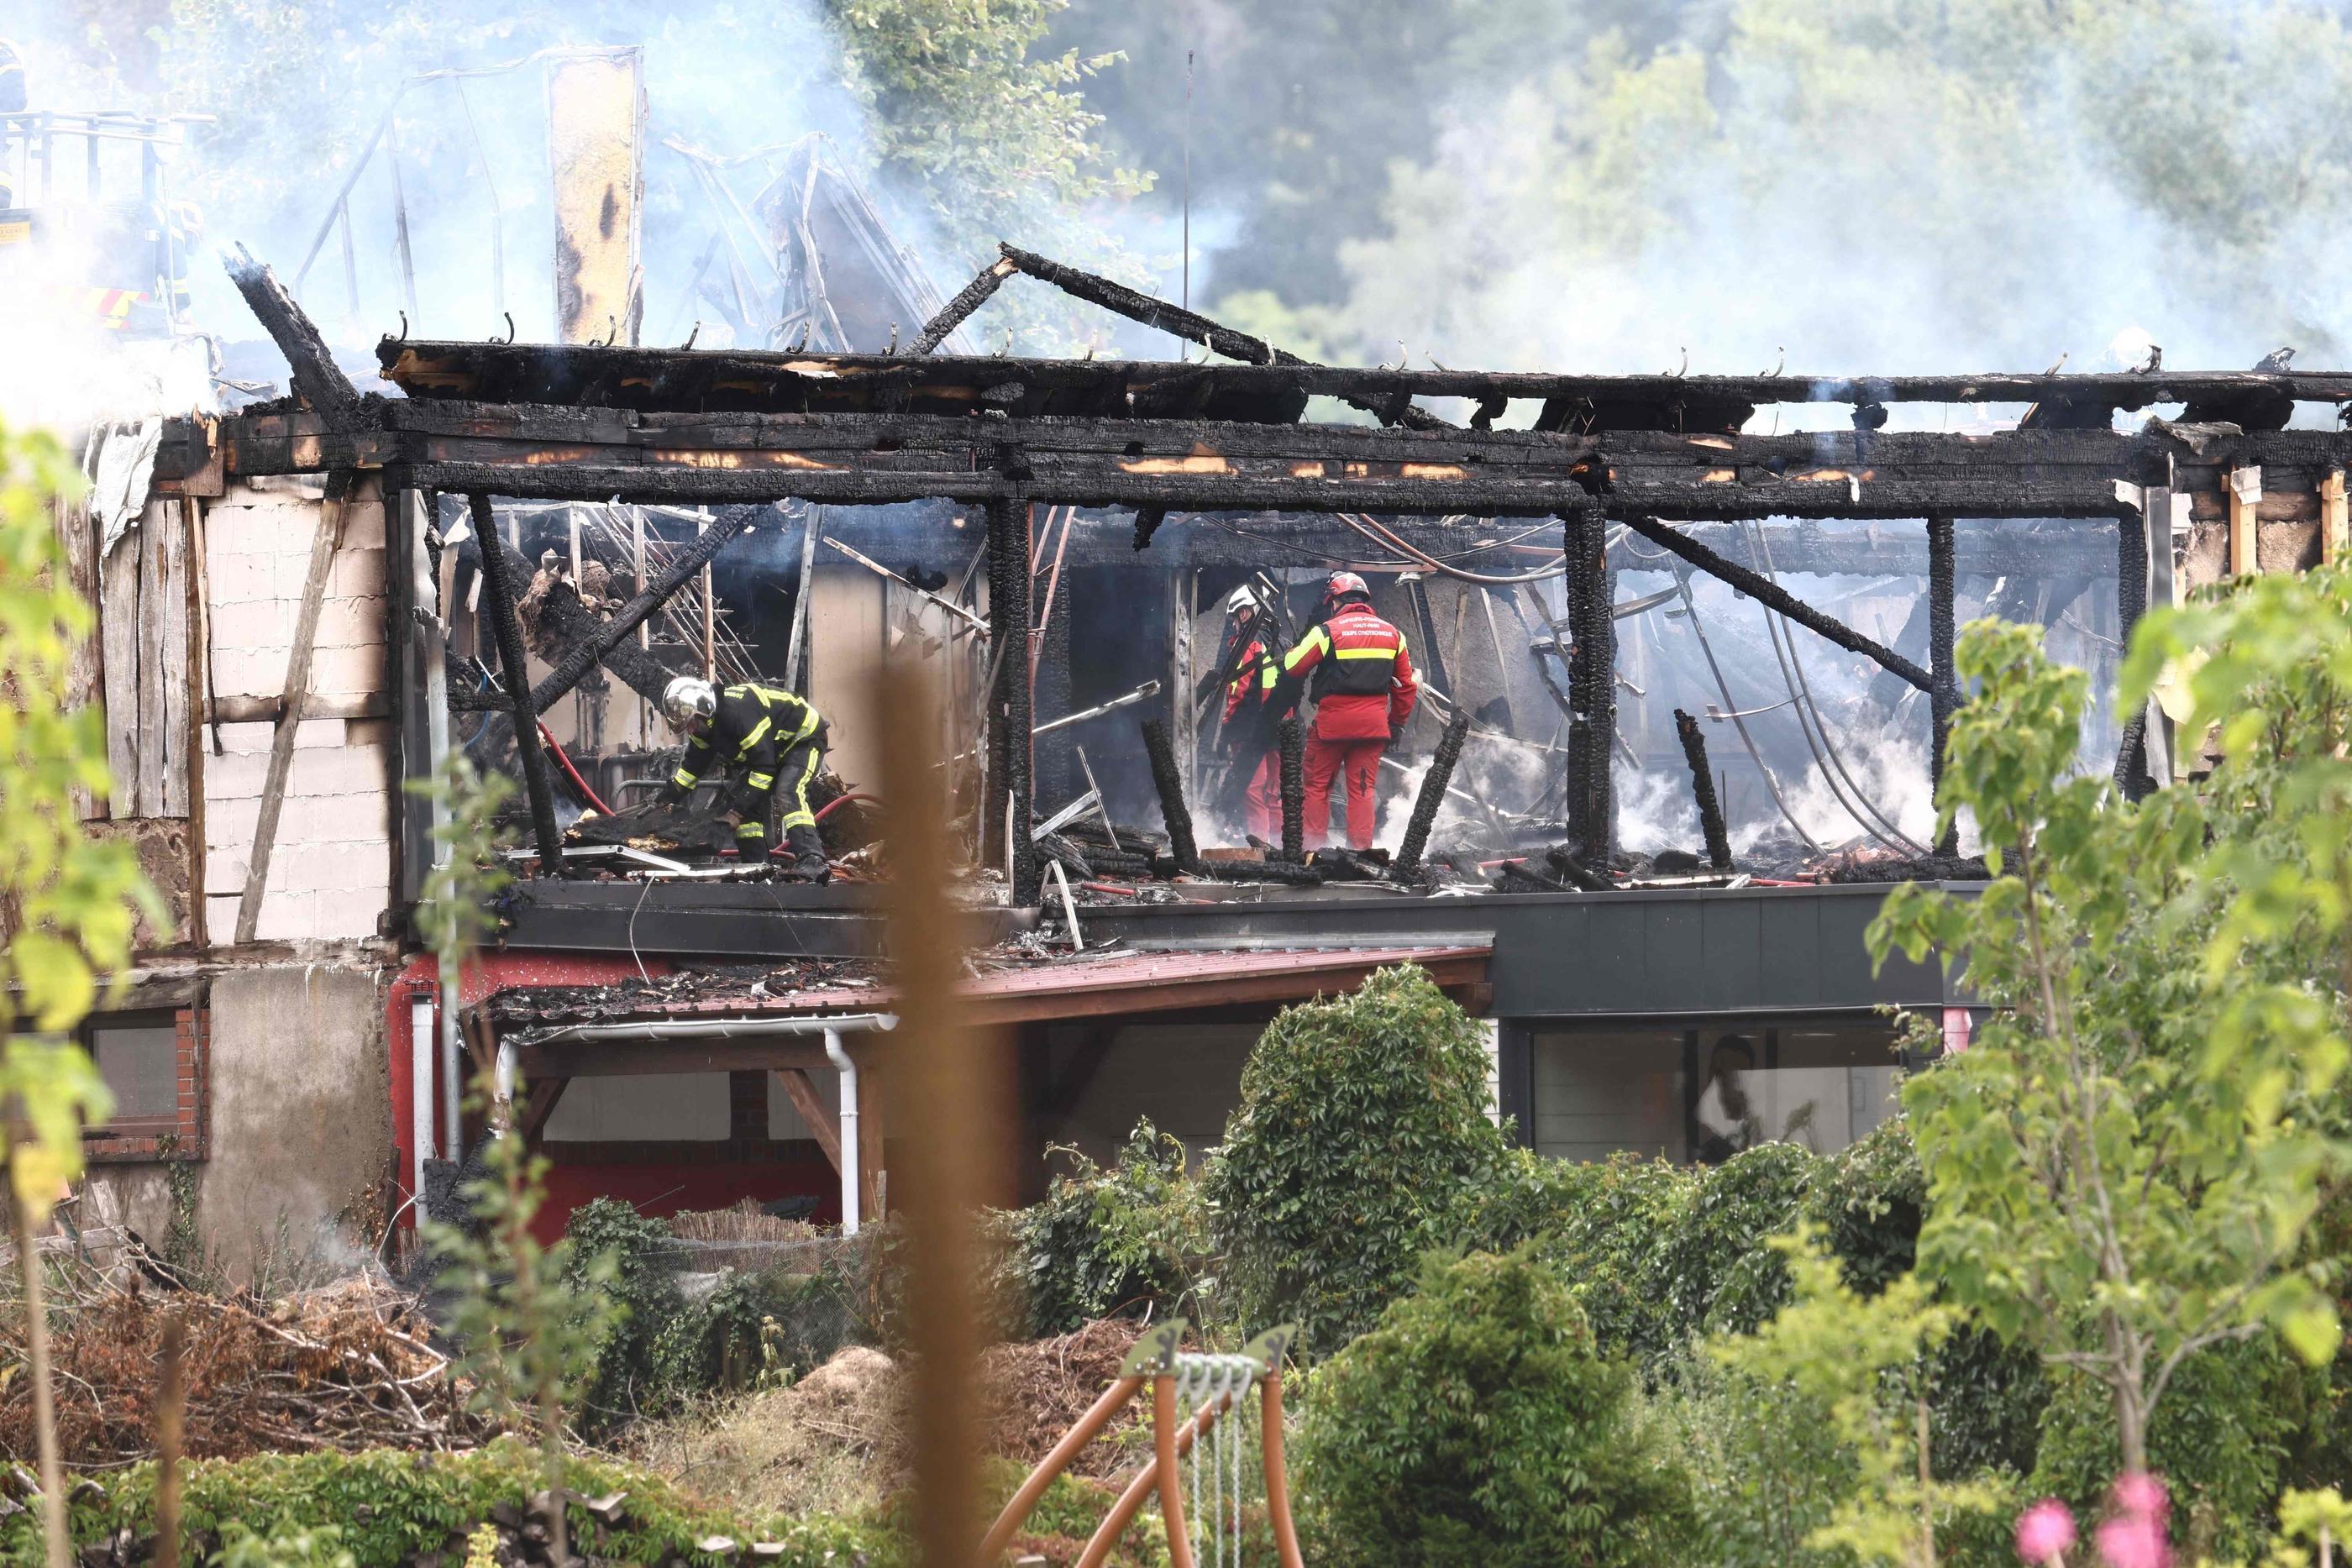 La structure en bois, incendiée le 9 août à Wintzenheim, hébergeait vingt-huit personnes réparties sur trois niveaux. Sebastien BOZON / AFP